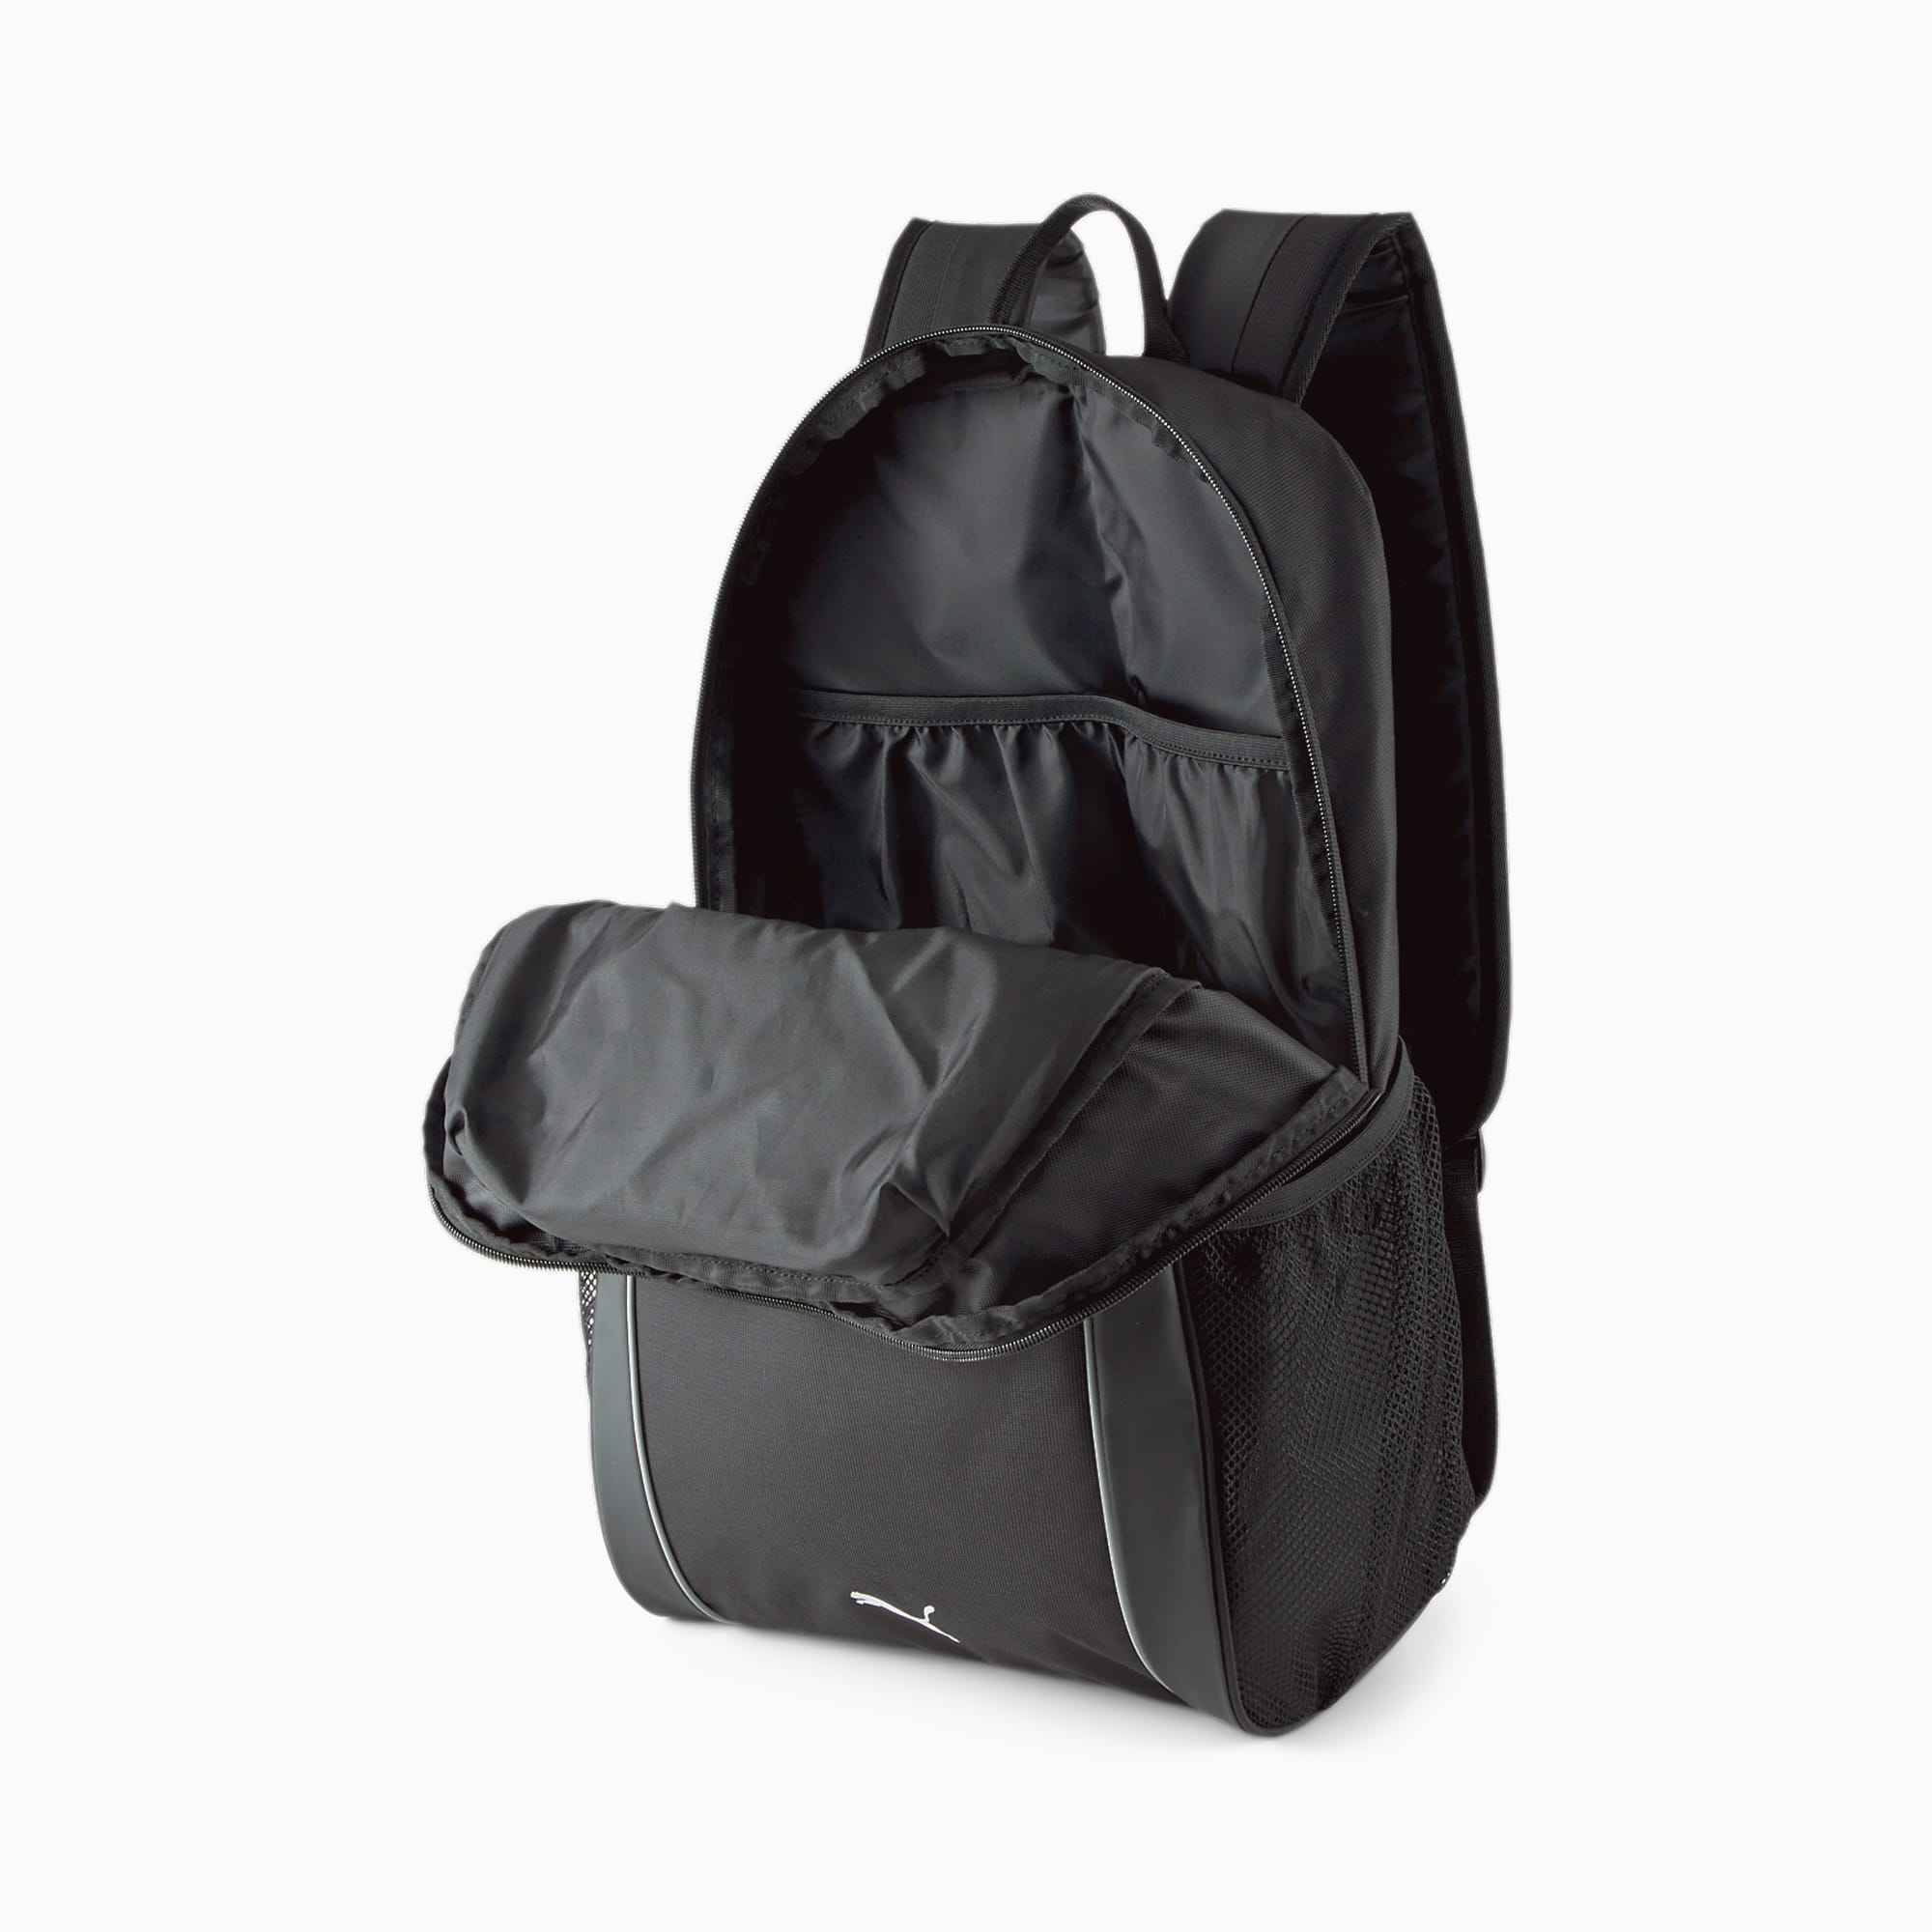 Puma Unisex Mercedes-AMG PETRONAS Backpack - Black - One Size